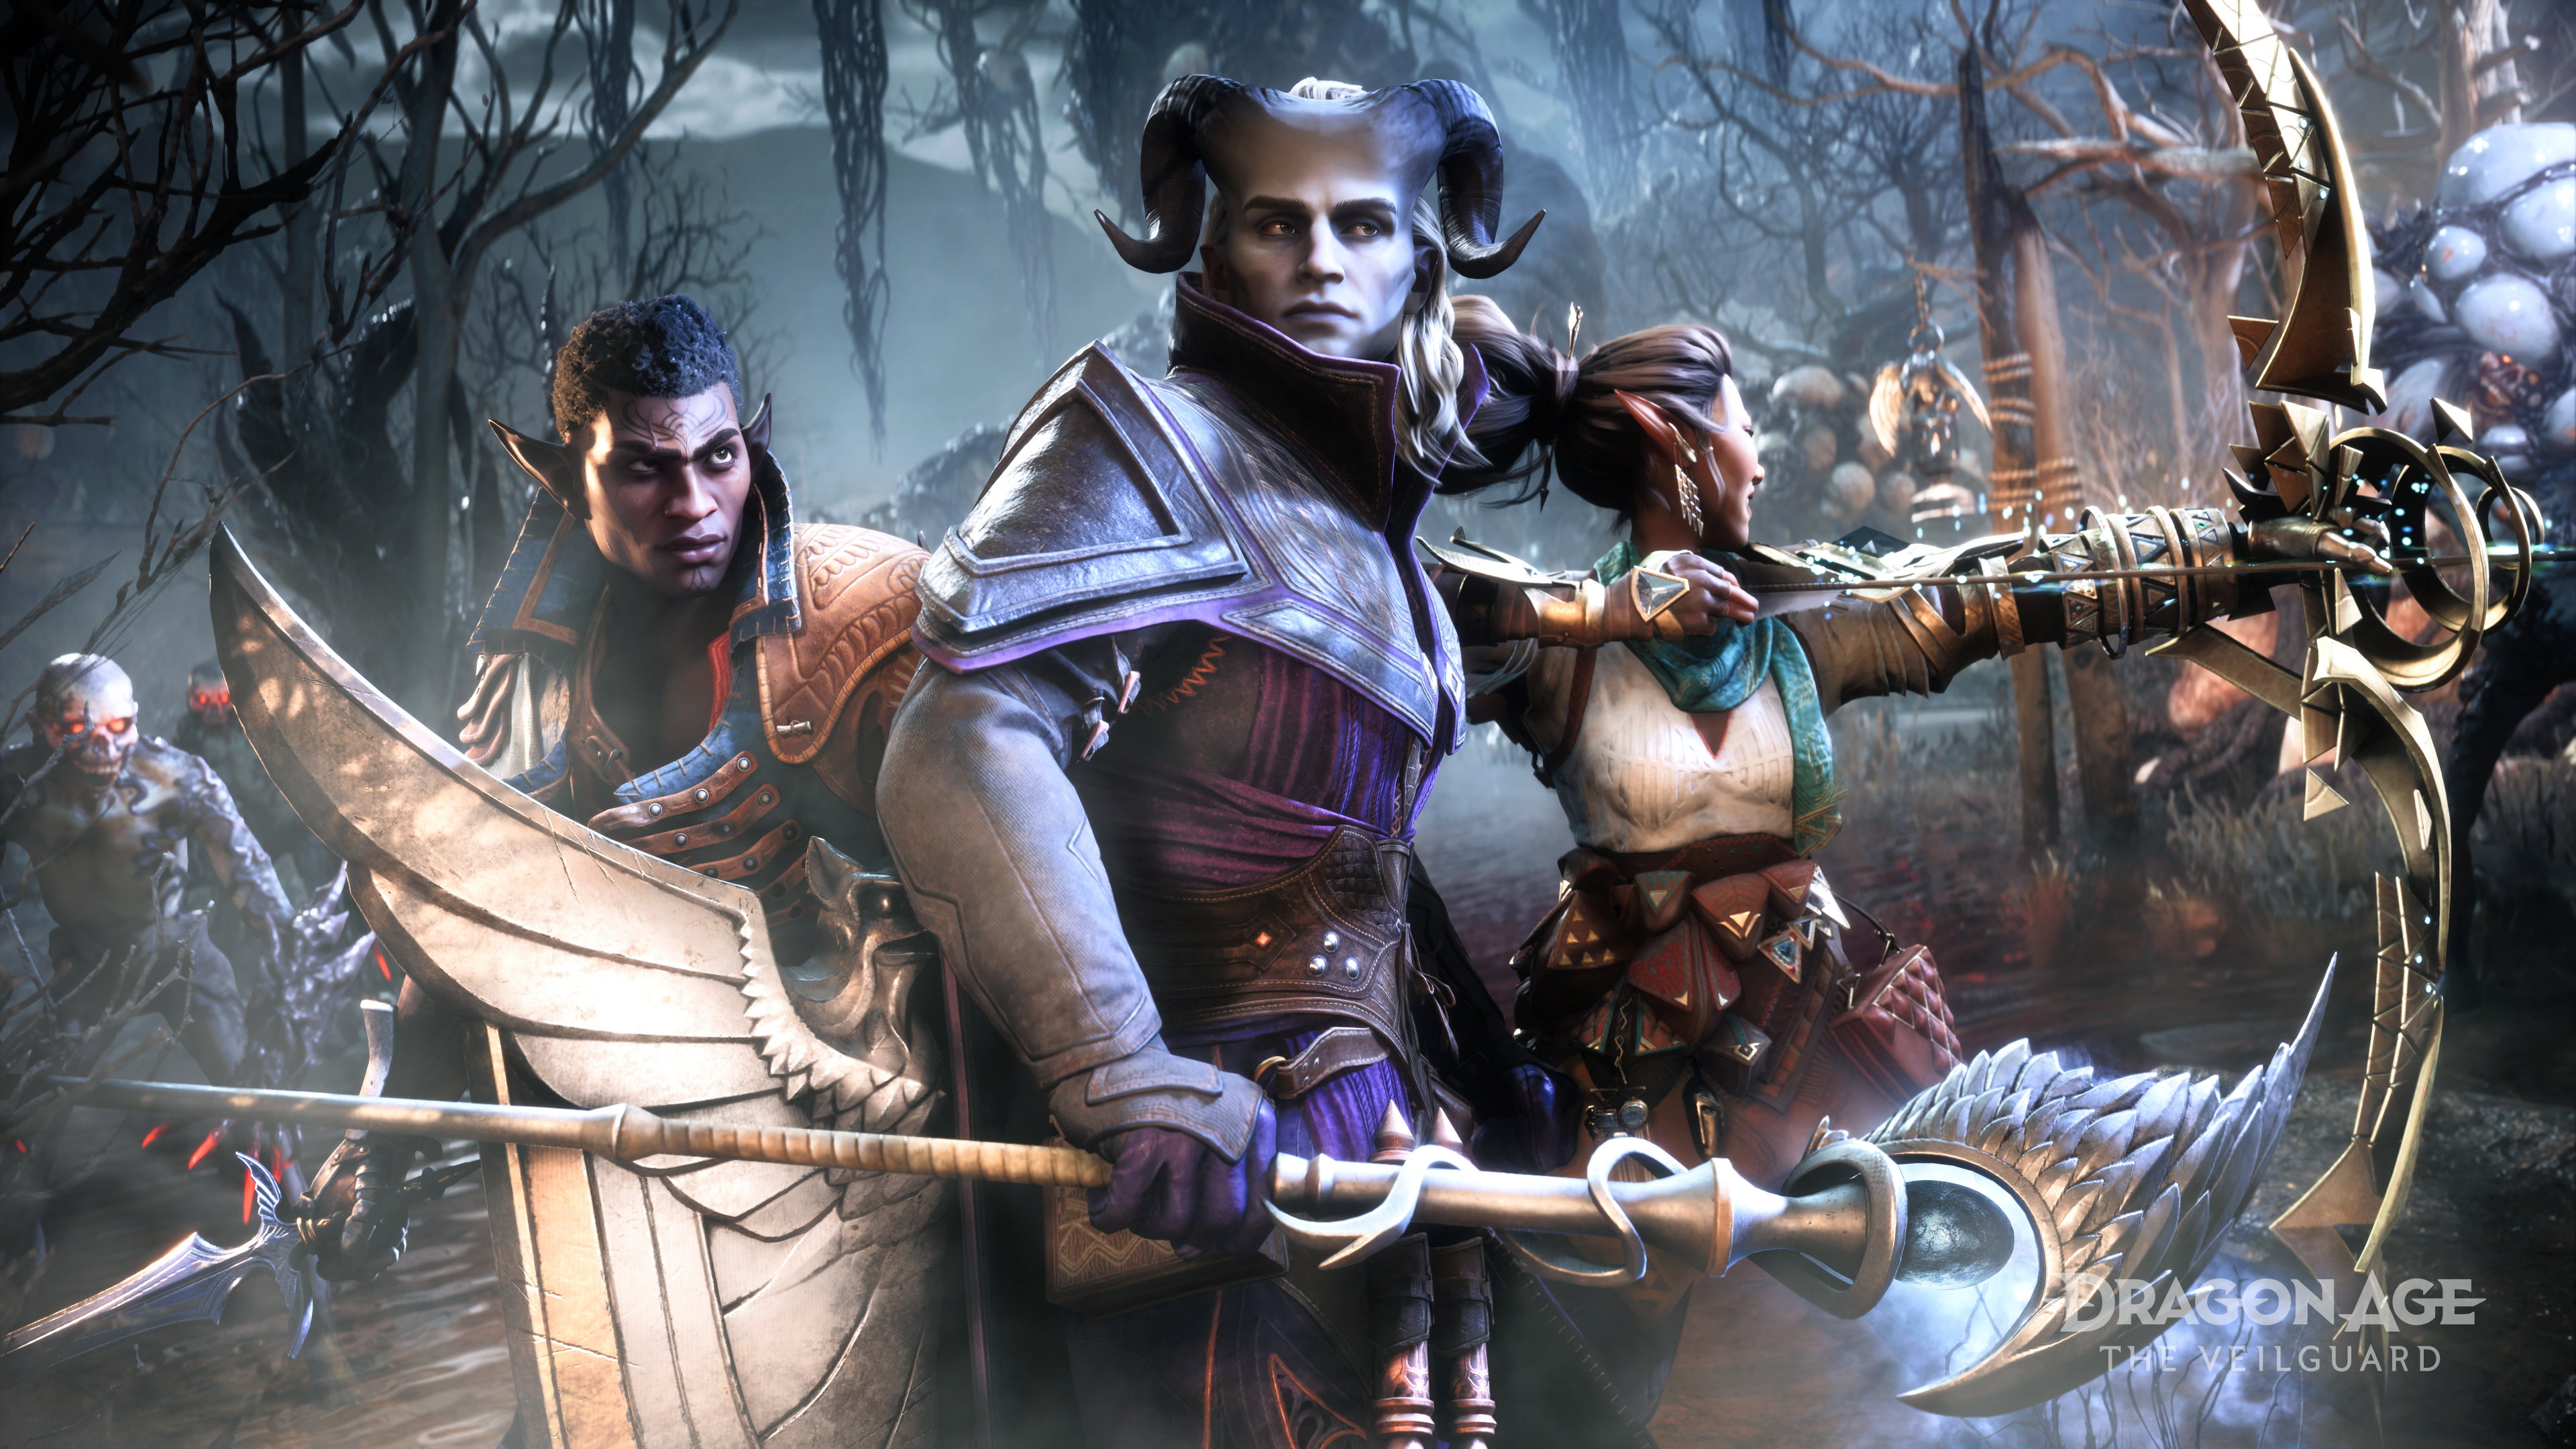 Dragon Age: The Veilguard: практические впечатления от демо-версии первого часа игрового процесса